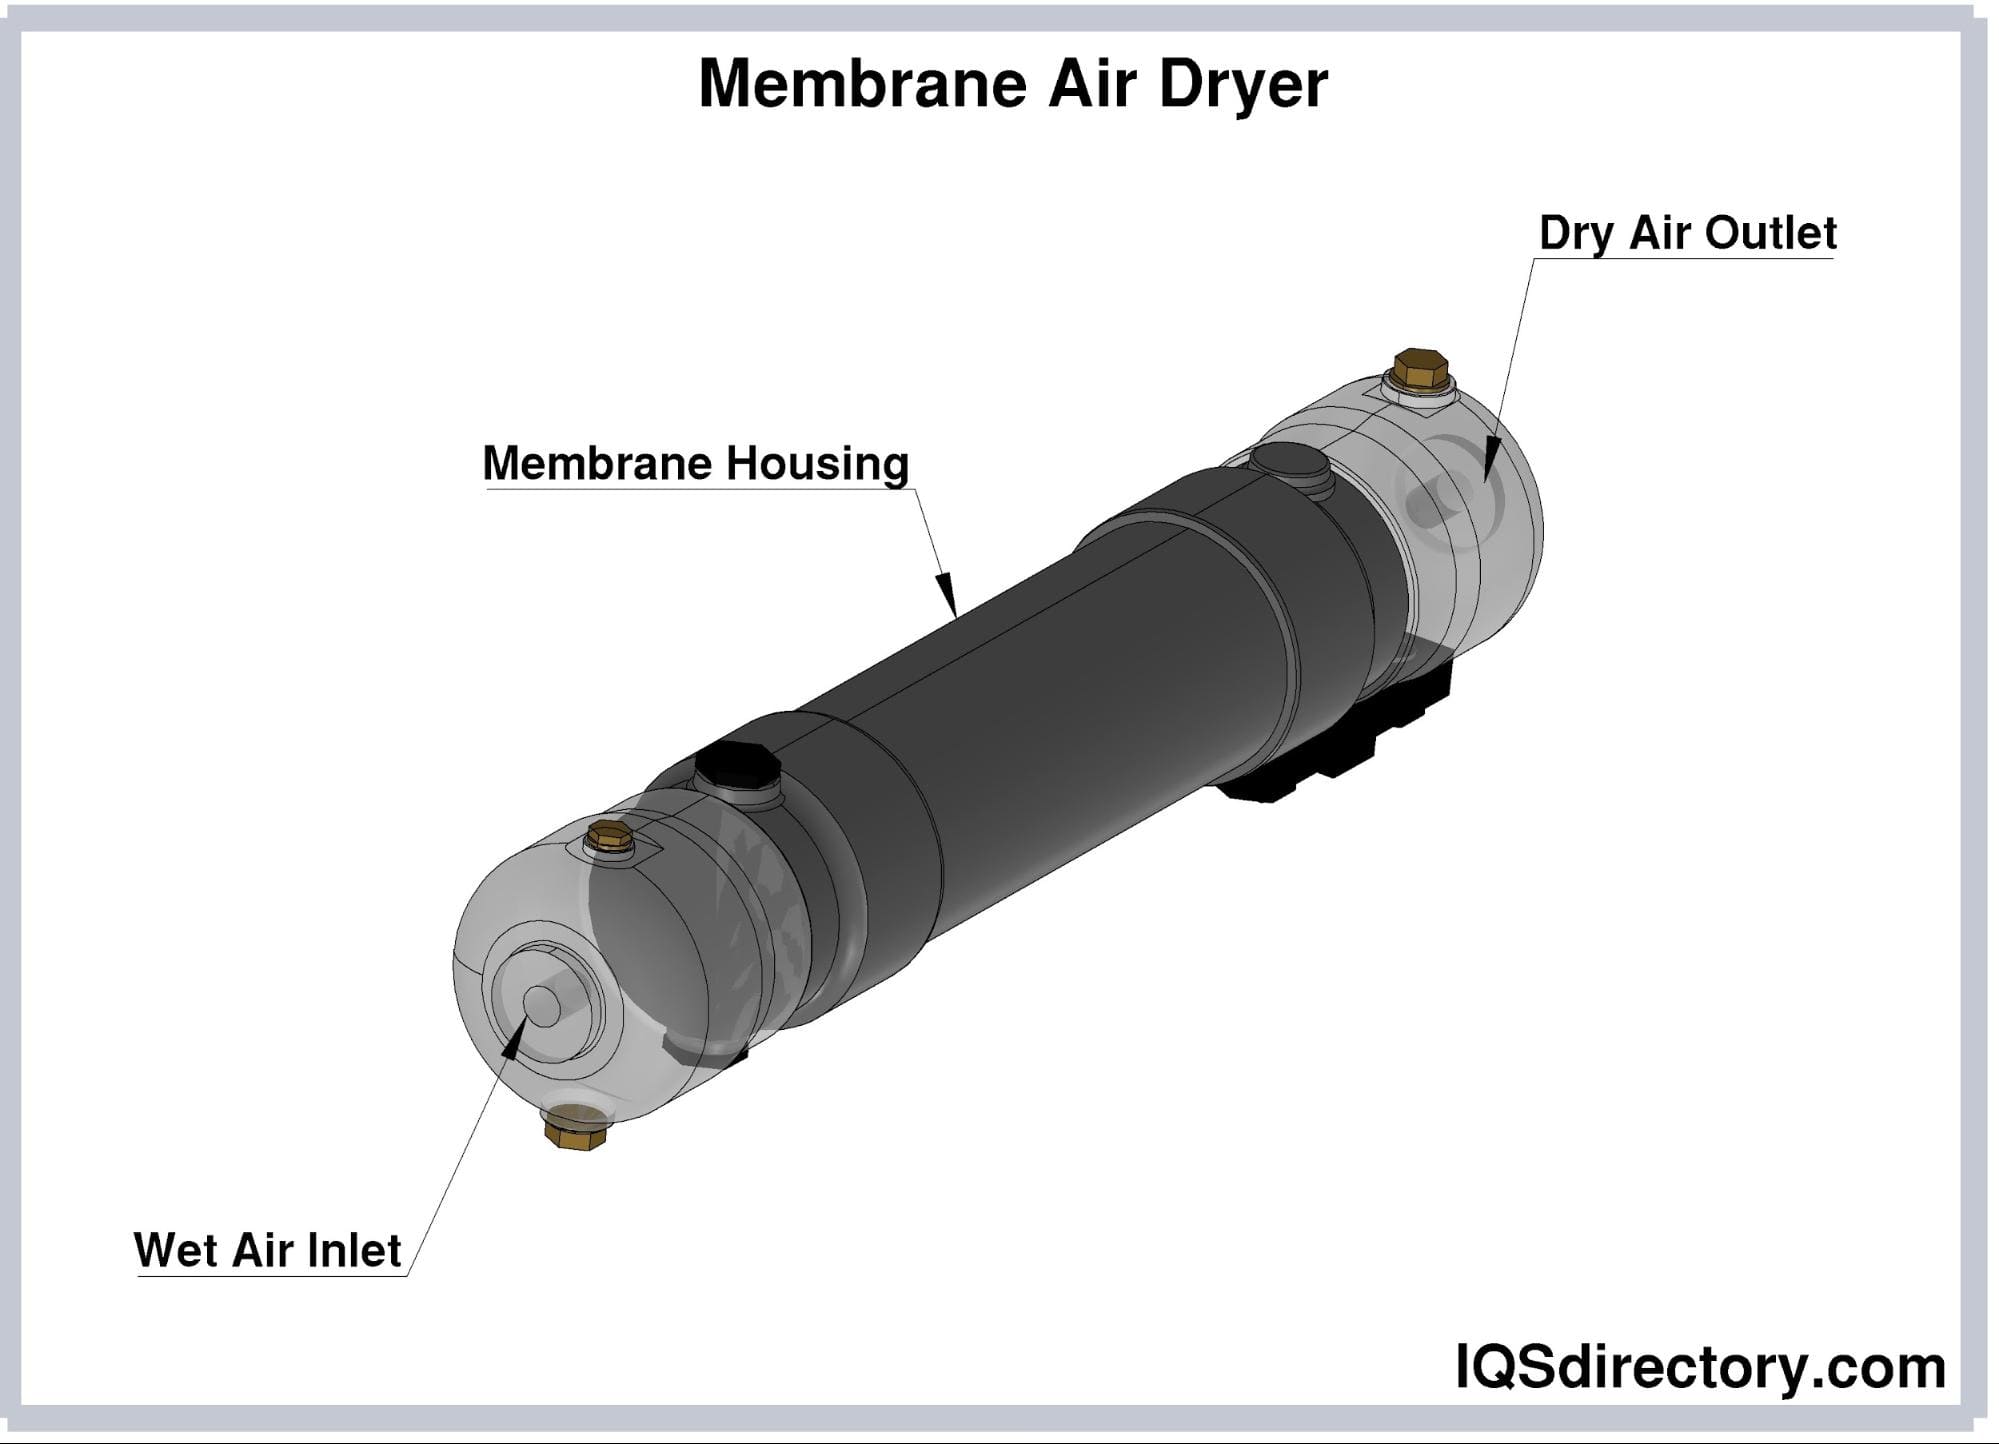 Membrane Air Dryers